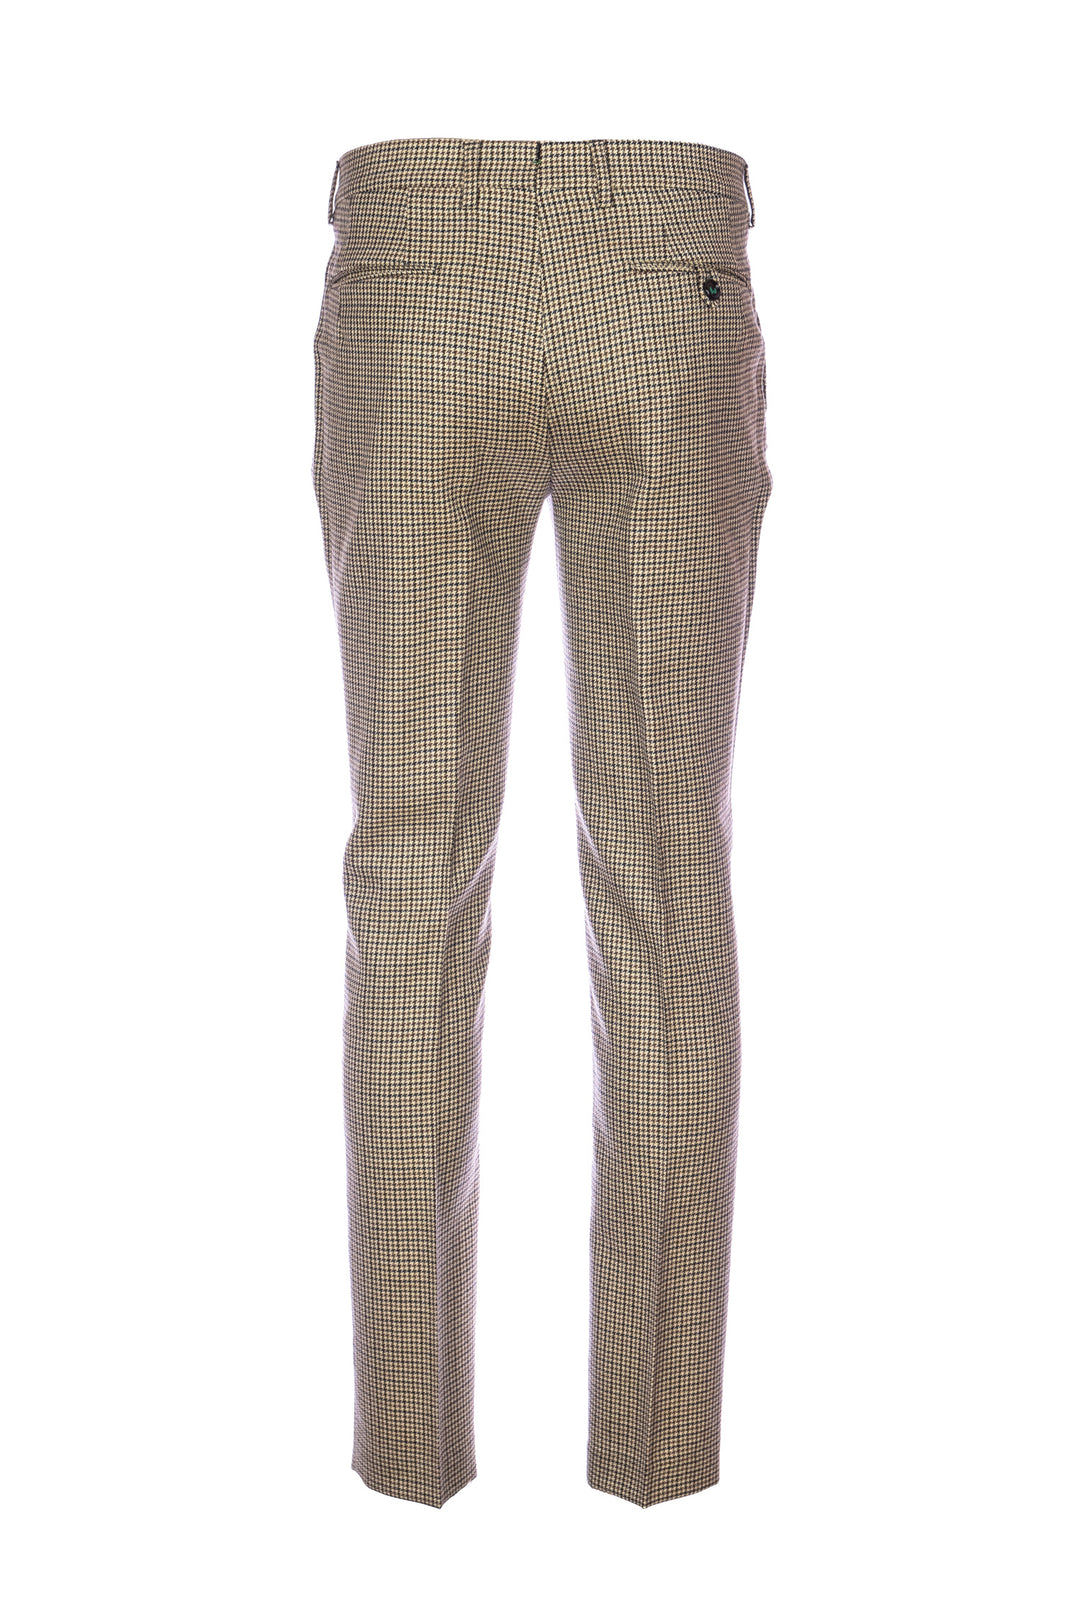 BERWICH Pantalone pied de poule beige in lana vergine stretch con una pince - Mancinelli 1954